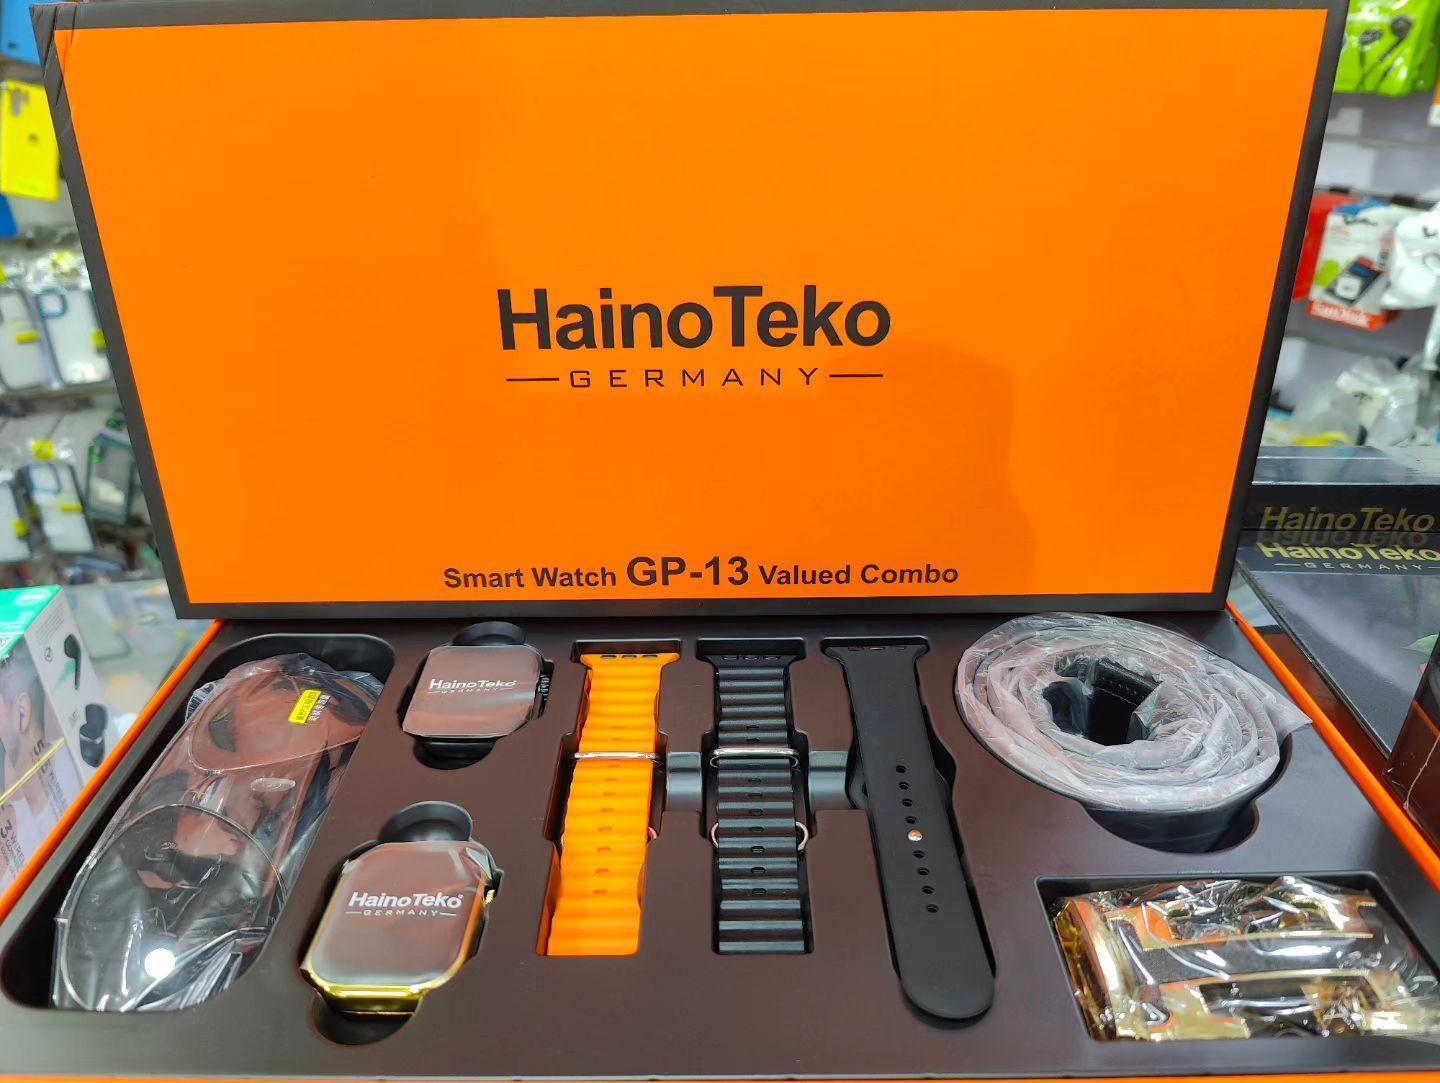 ساعت هوشمند هاینوتکو جی پی 13 پک هدیه HainoTeko GP-13  Smart Watch - ارسال رایگان